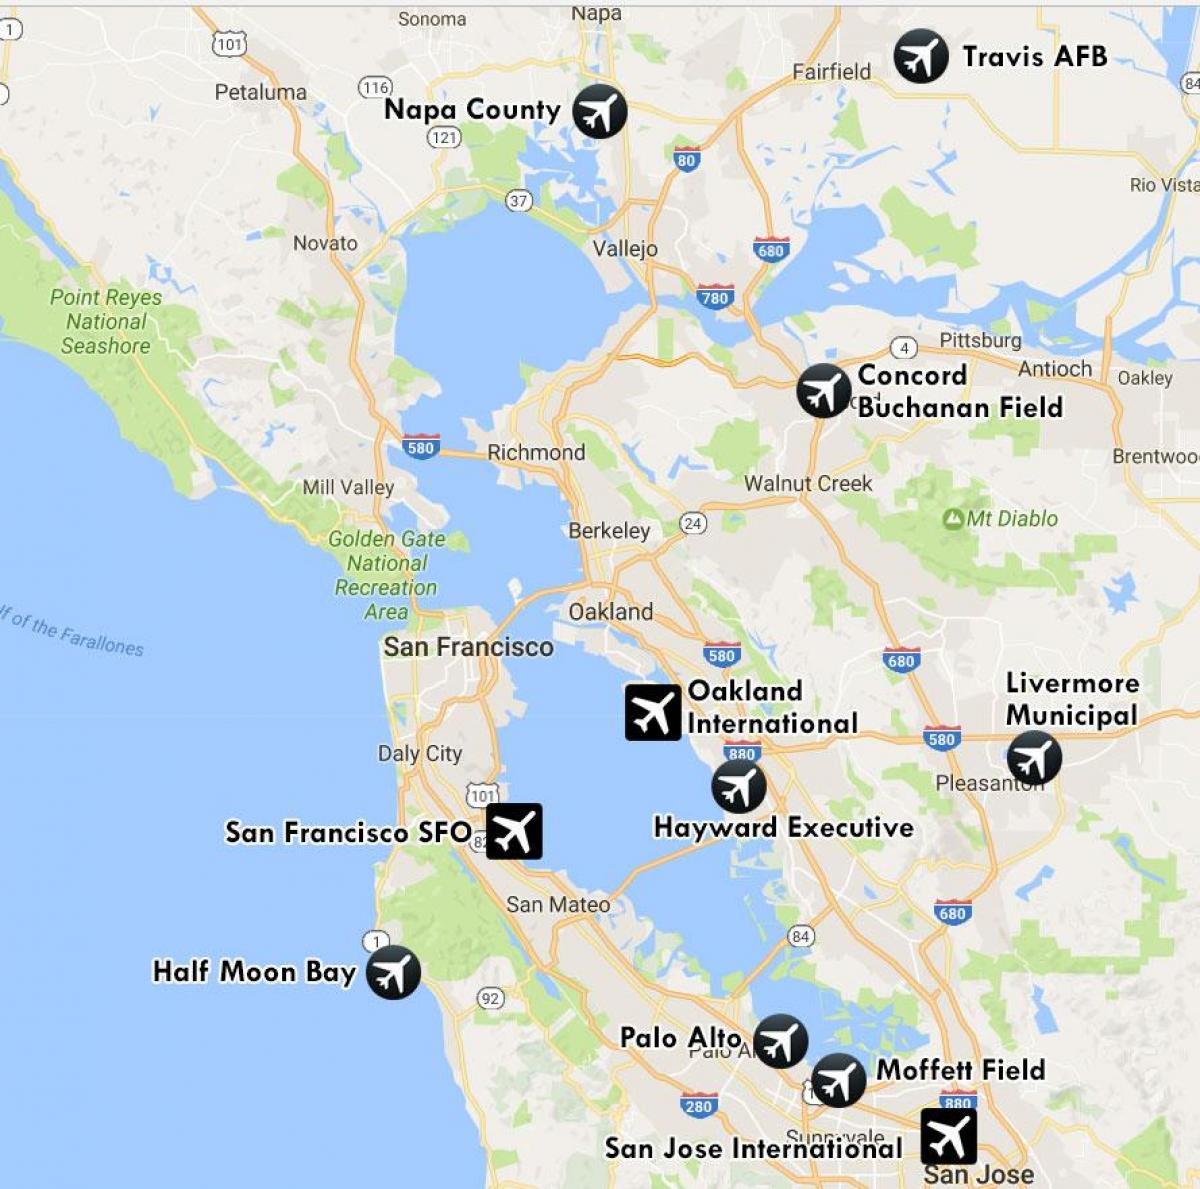 нисэх онгоцны буудал орчимд Сан Франциско газрын зураг